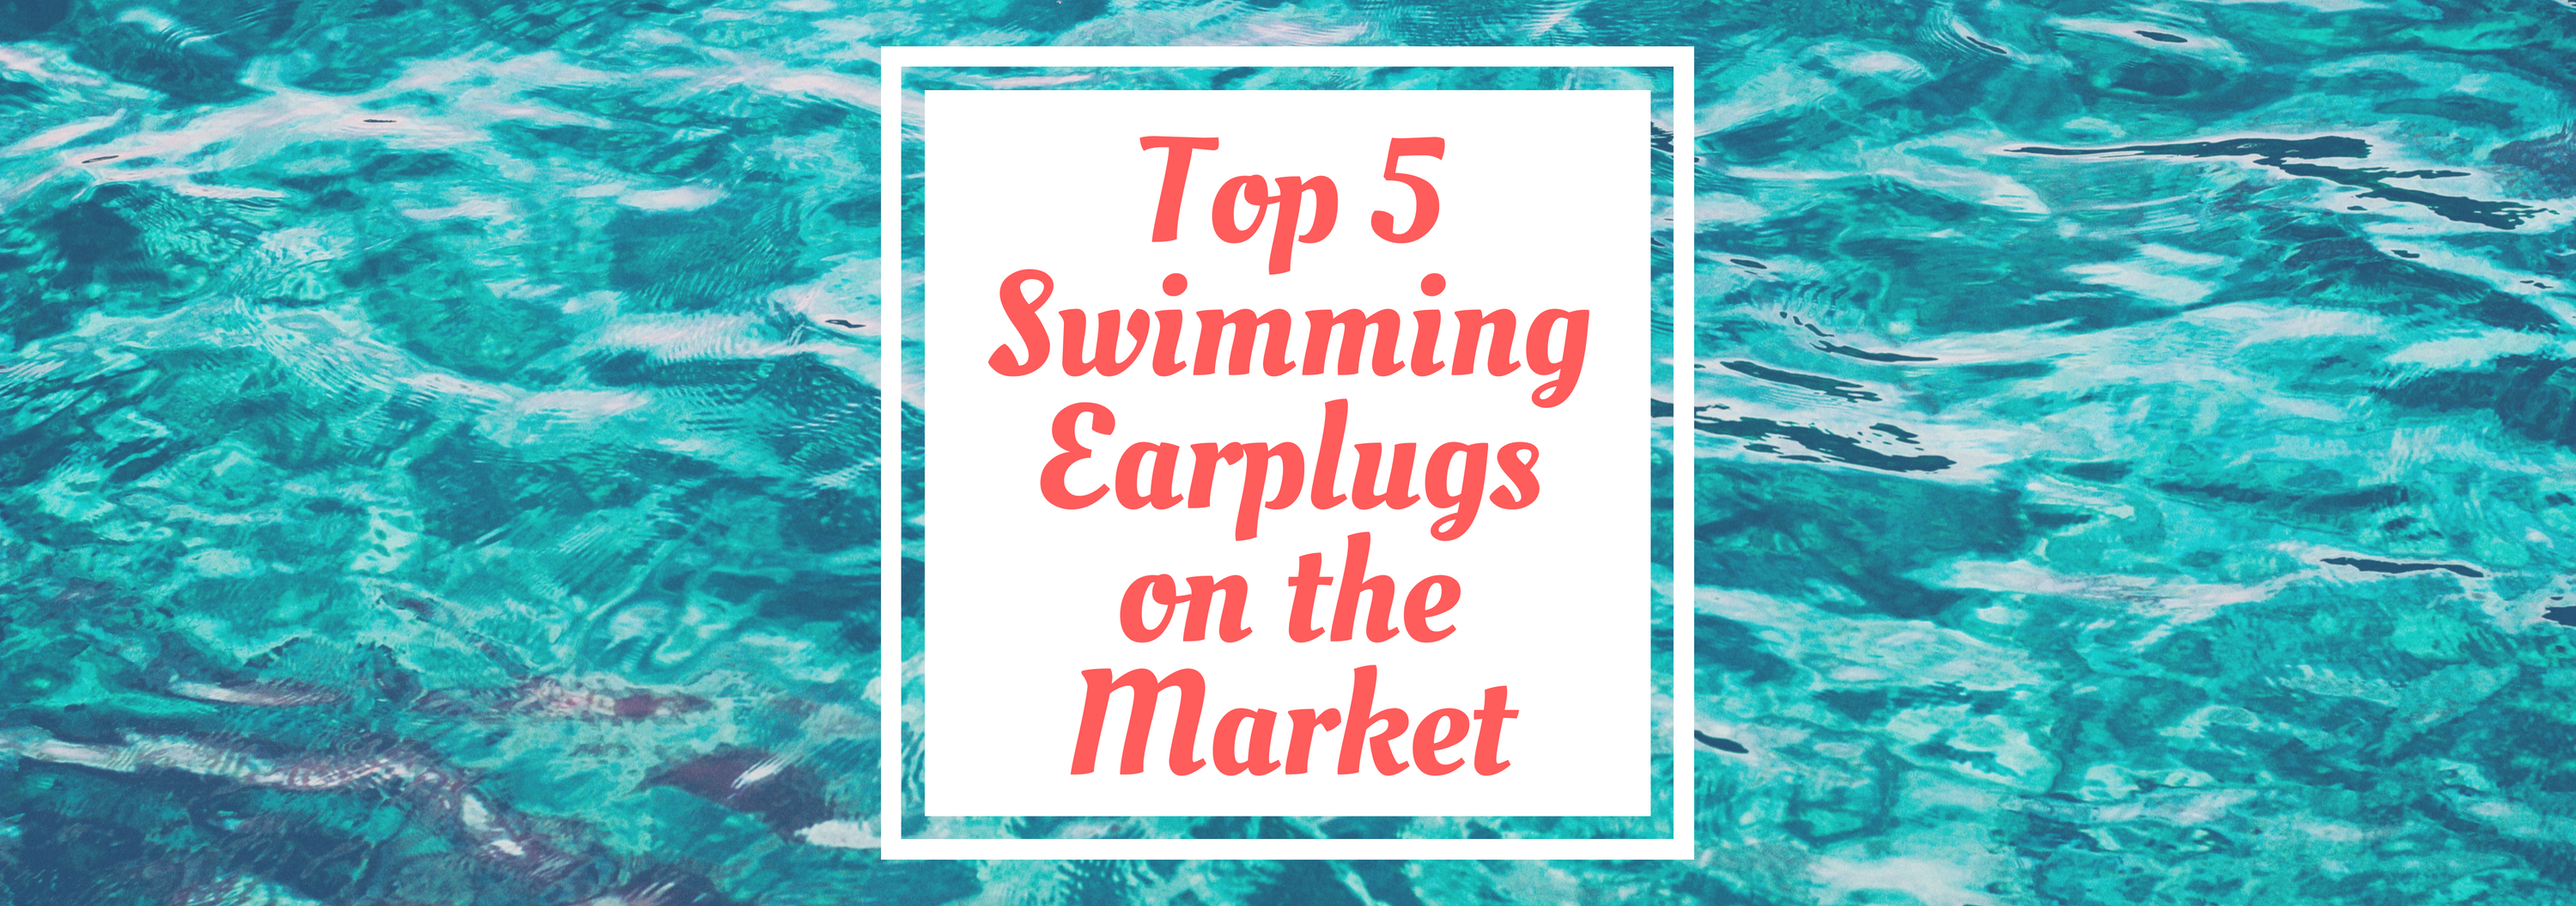 Top 5 Swimming Earplugs on the Market